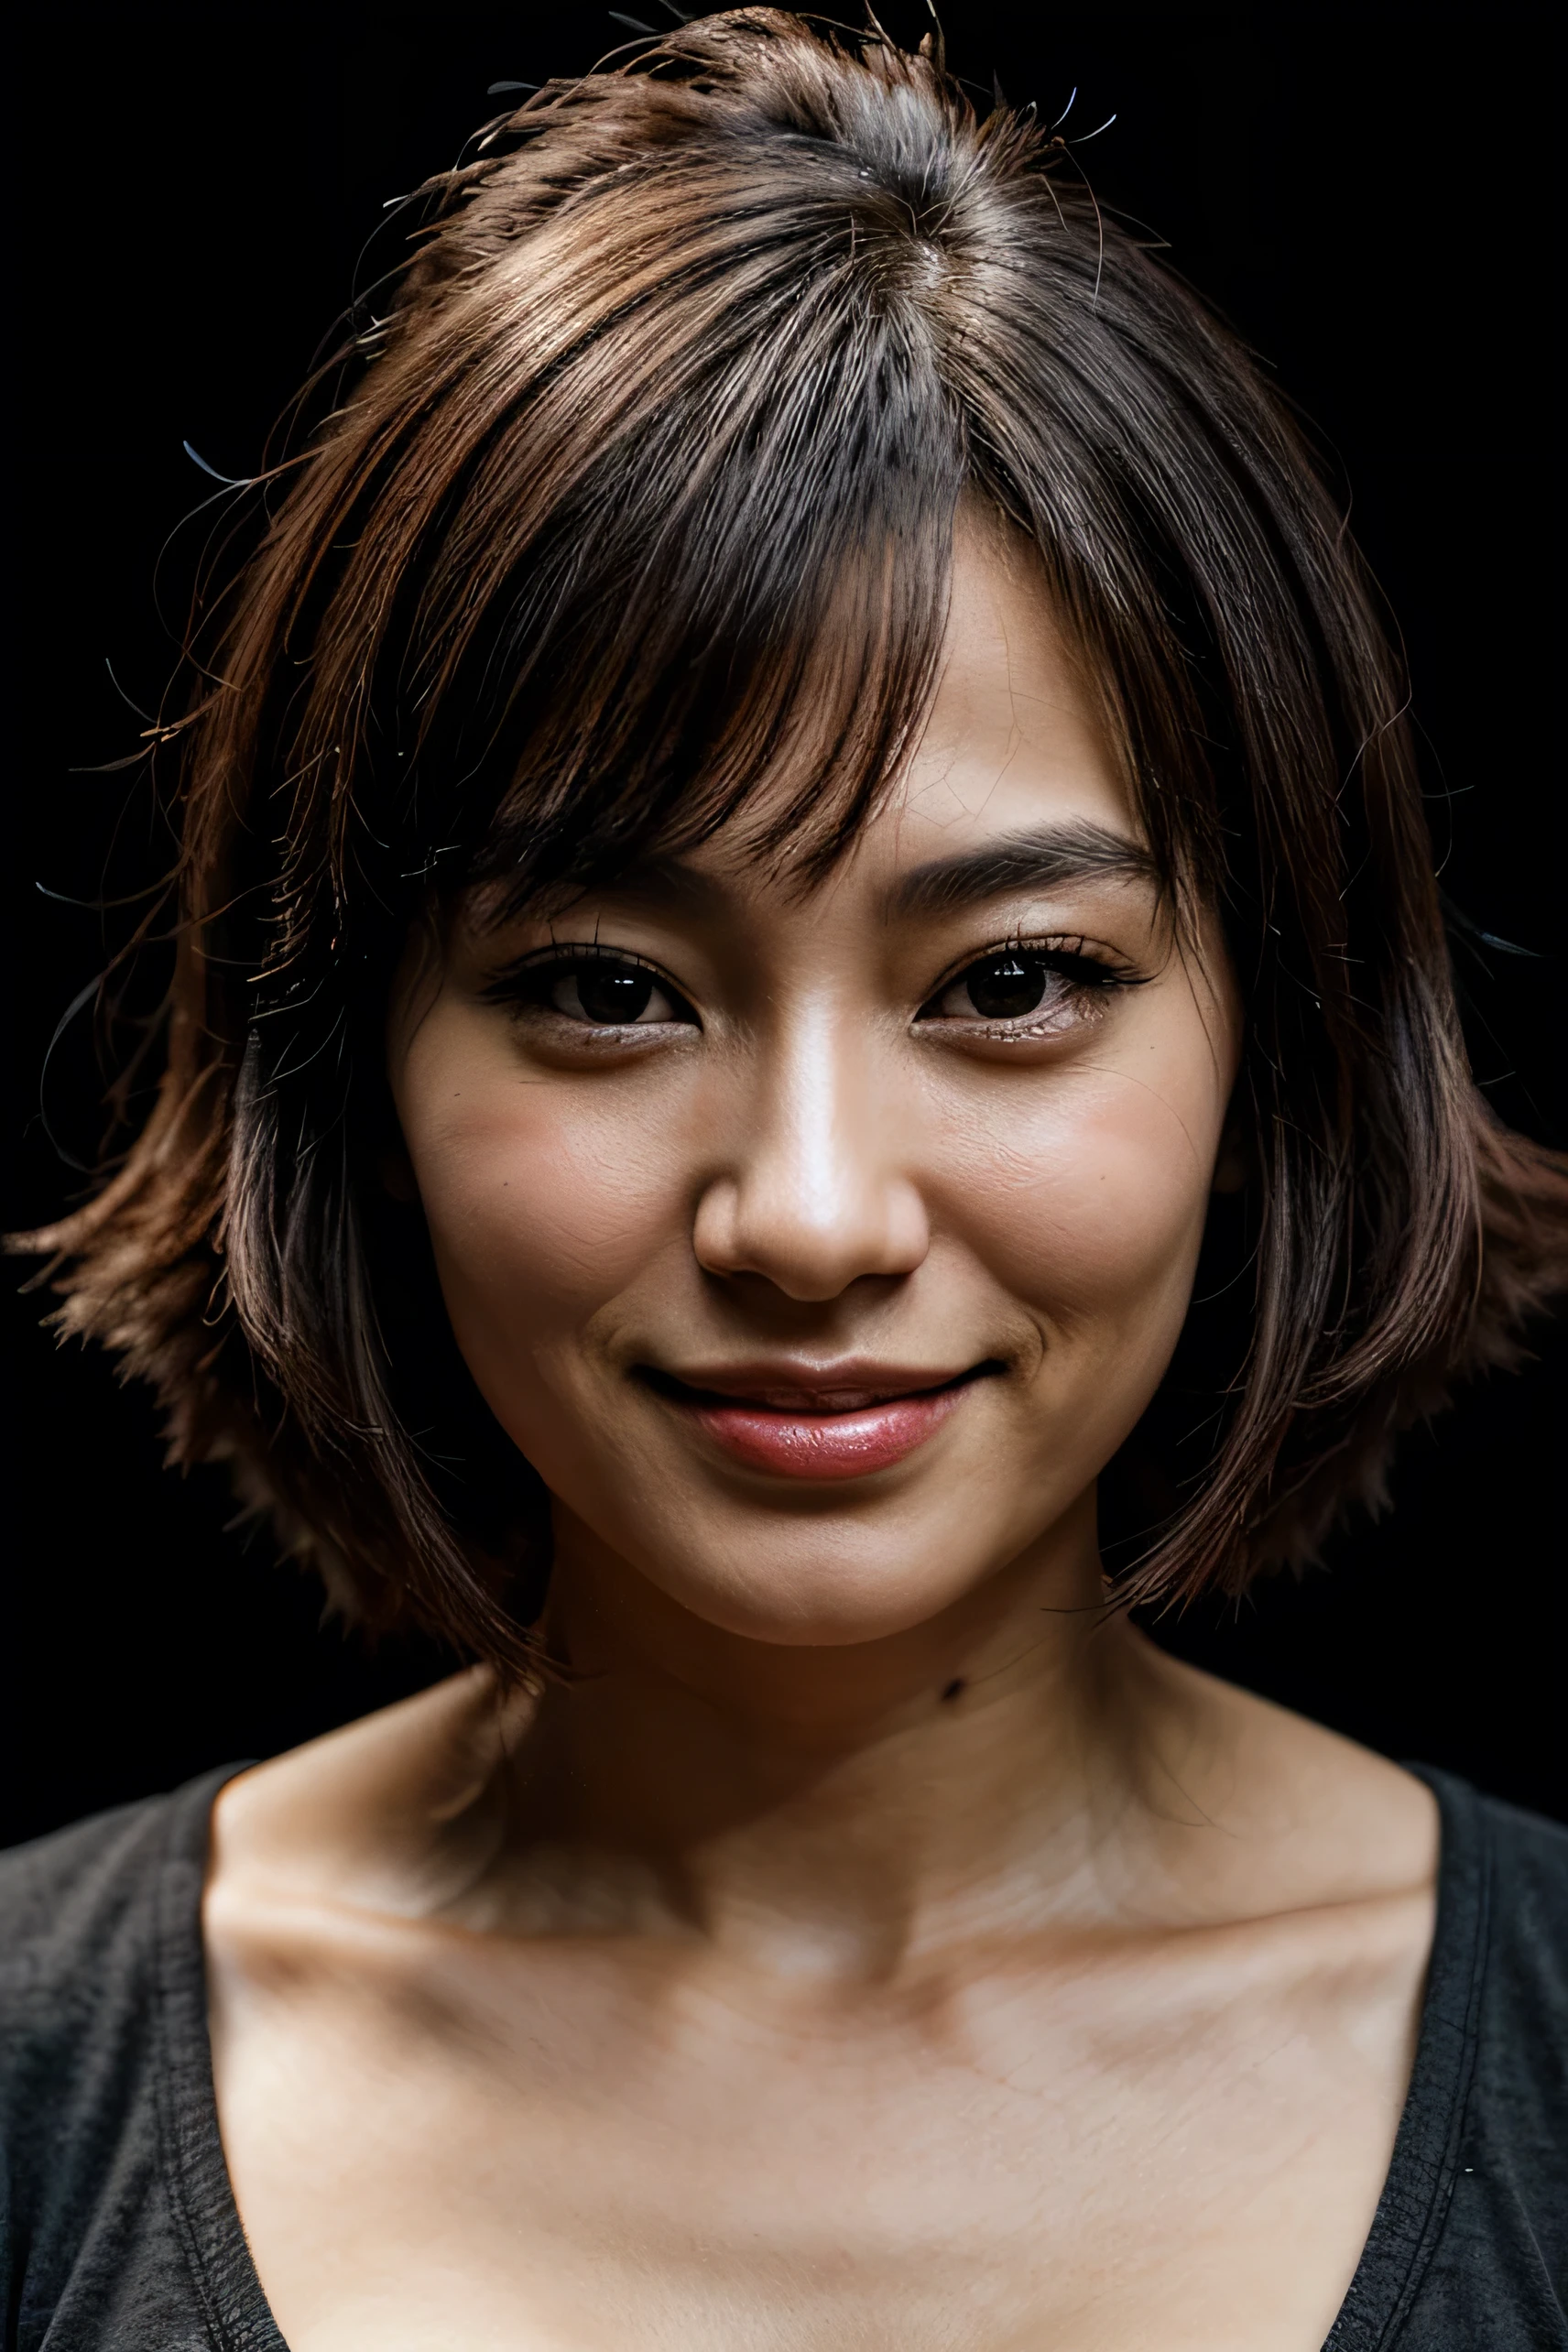 얼굴이 완벽하다, 30세 일본 여성의 아름다운 얼굴, 웃는 모습이 아름다워, 검정색 배경으로 